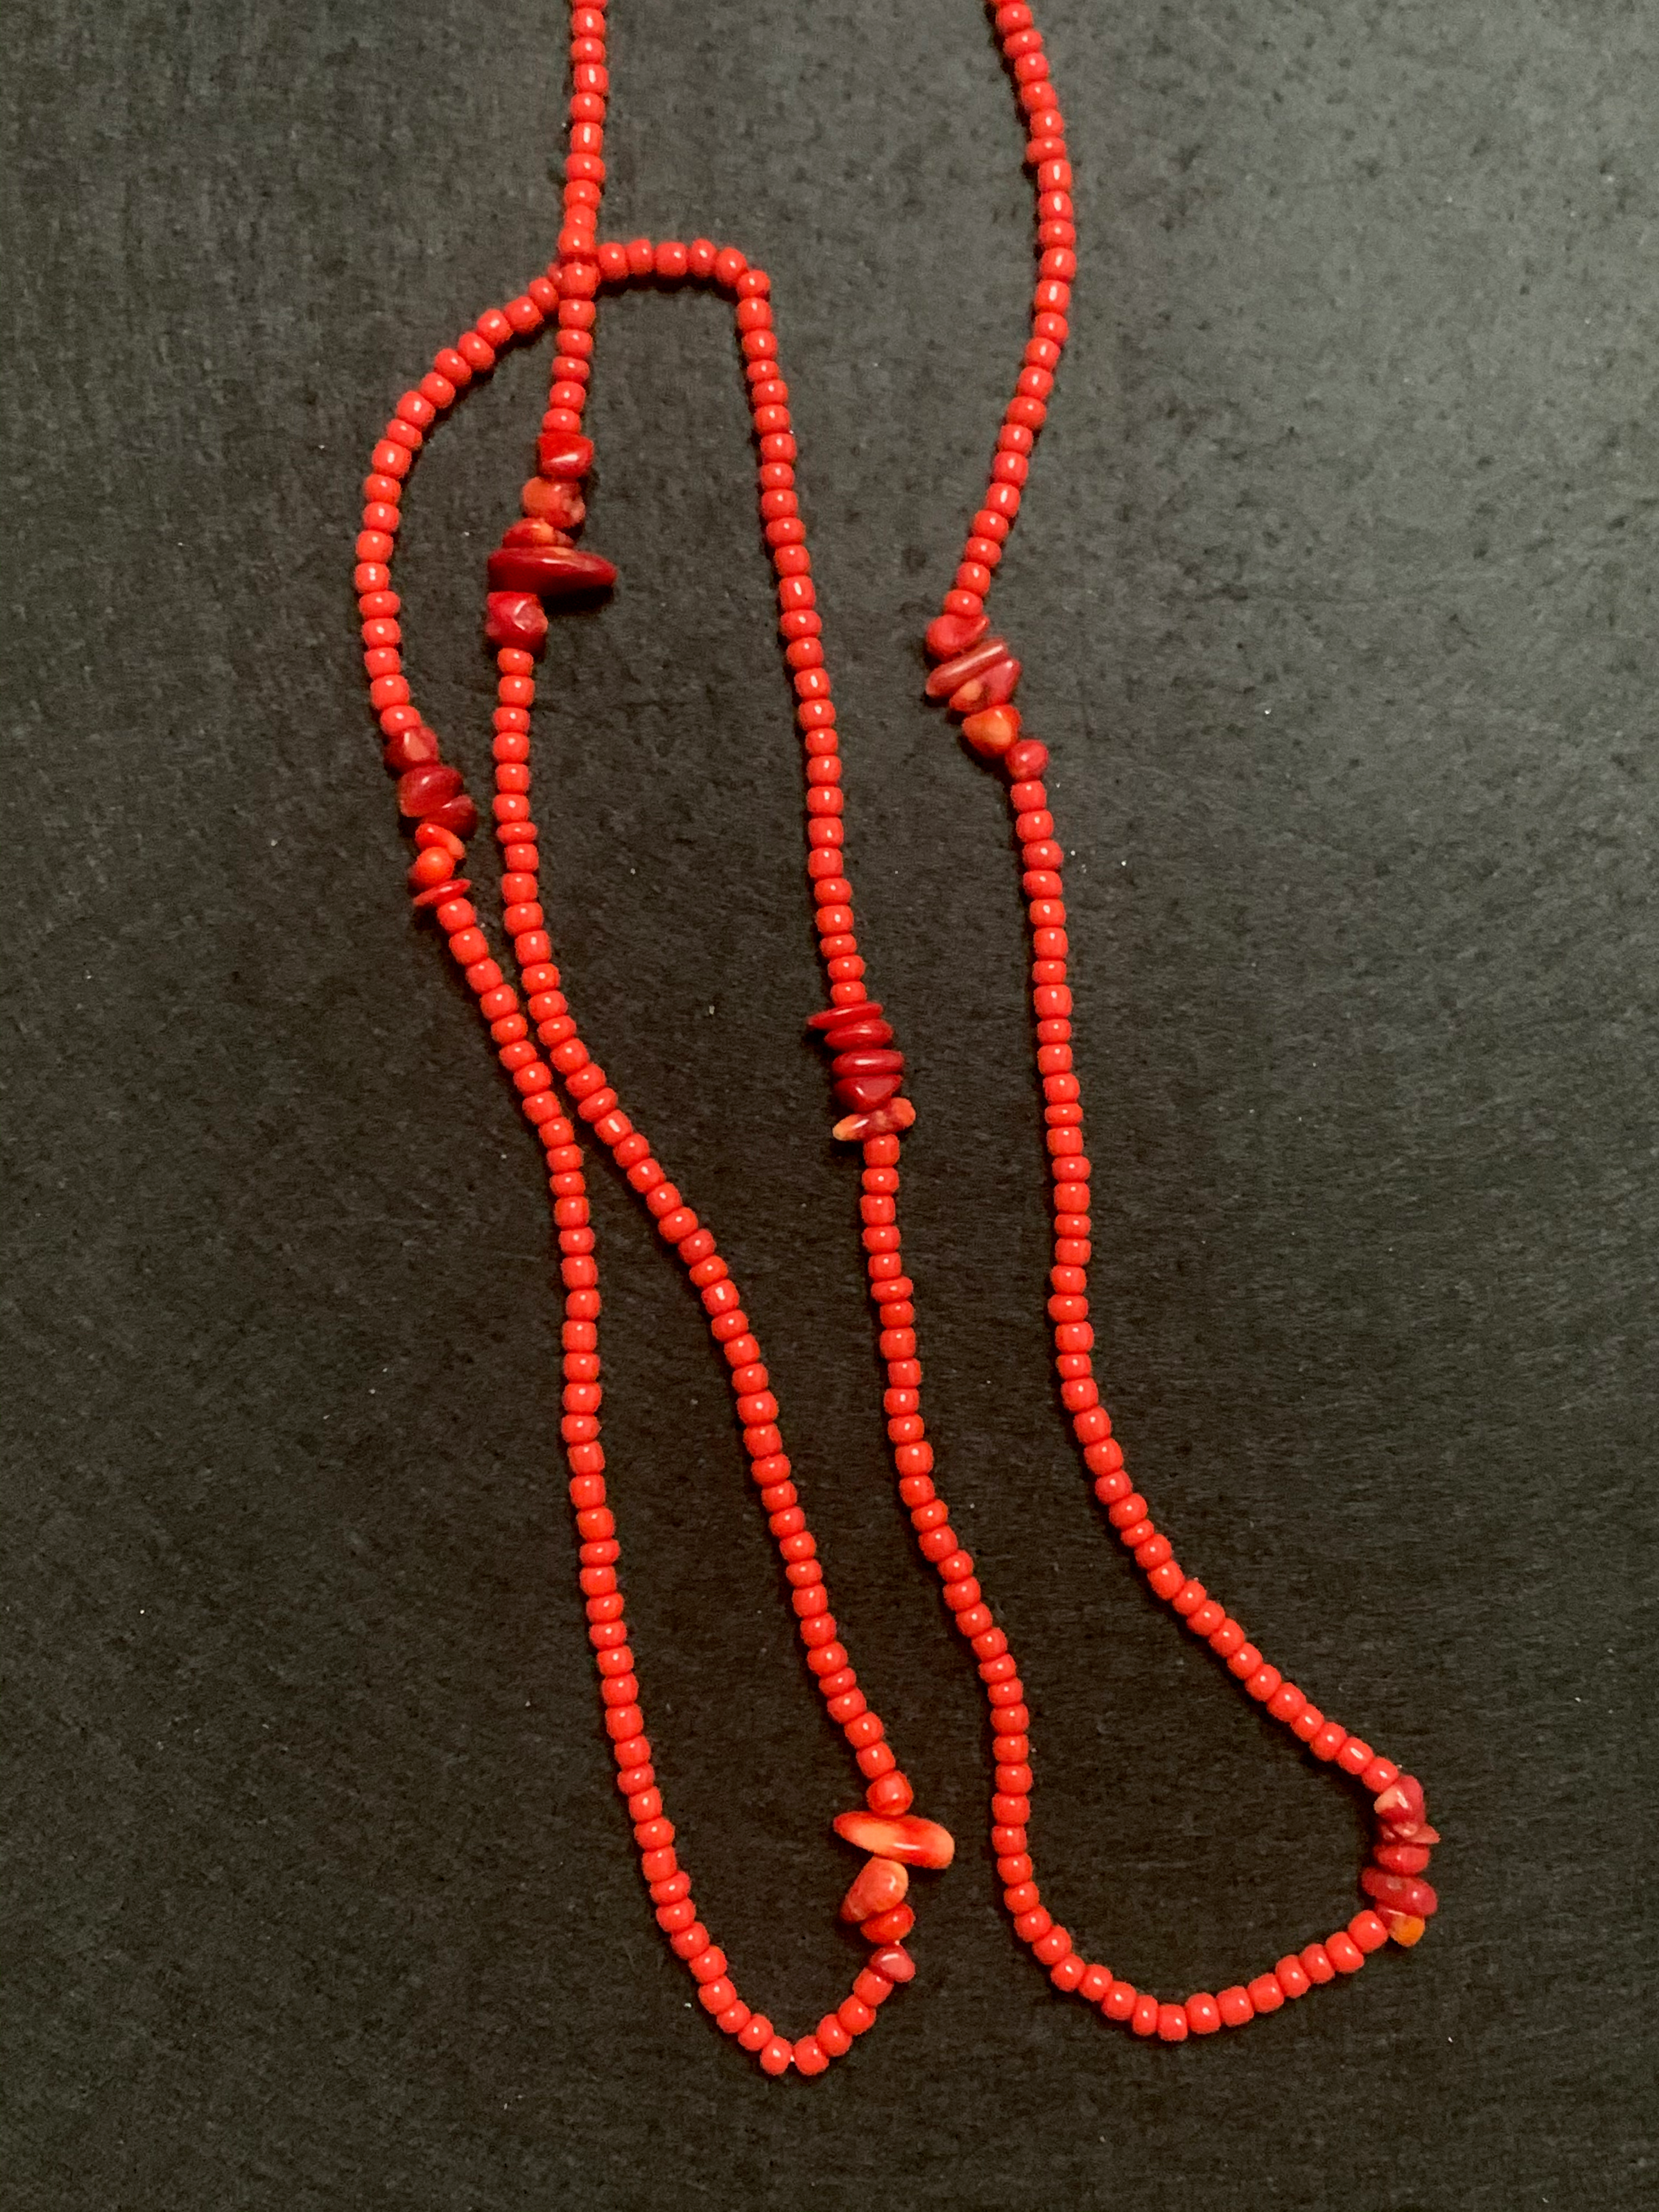 Chakra Beads